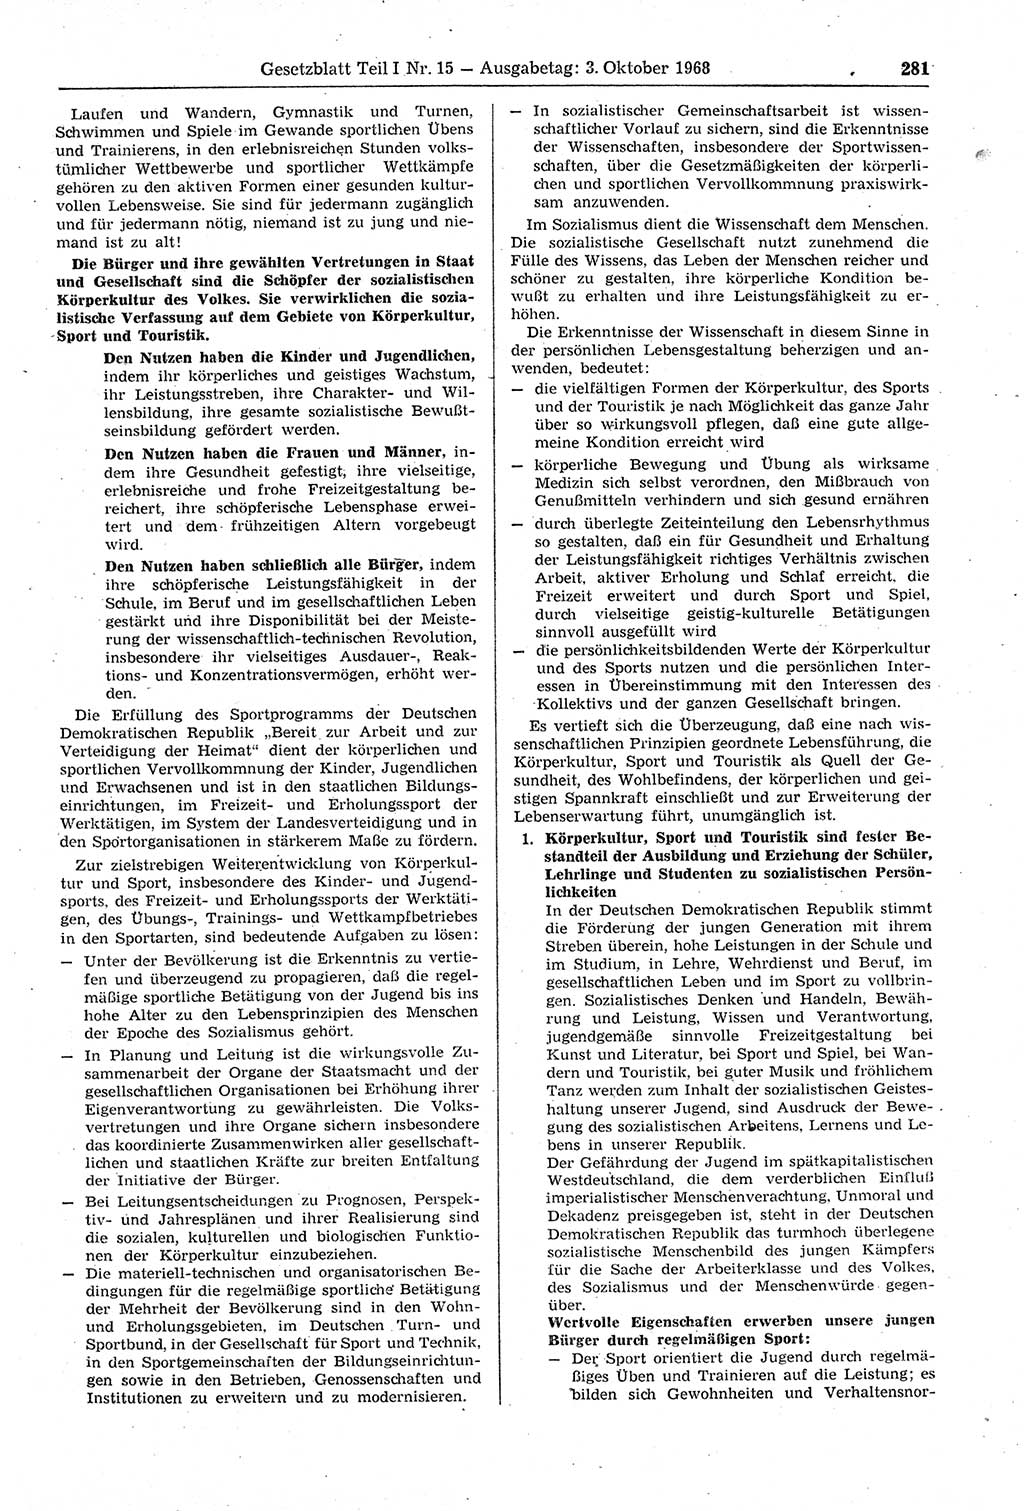 Gesetzblatt (GBl.) der Deutschen Demokratischen Republik (DDR) Teil Ⅰ 1968, Seite 281 (GBl. DDR Ⅰ 1968, S. 281)